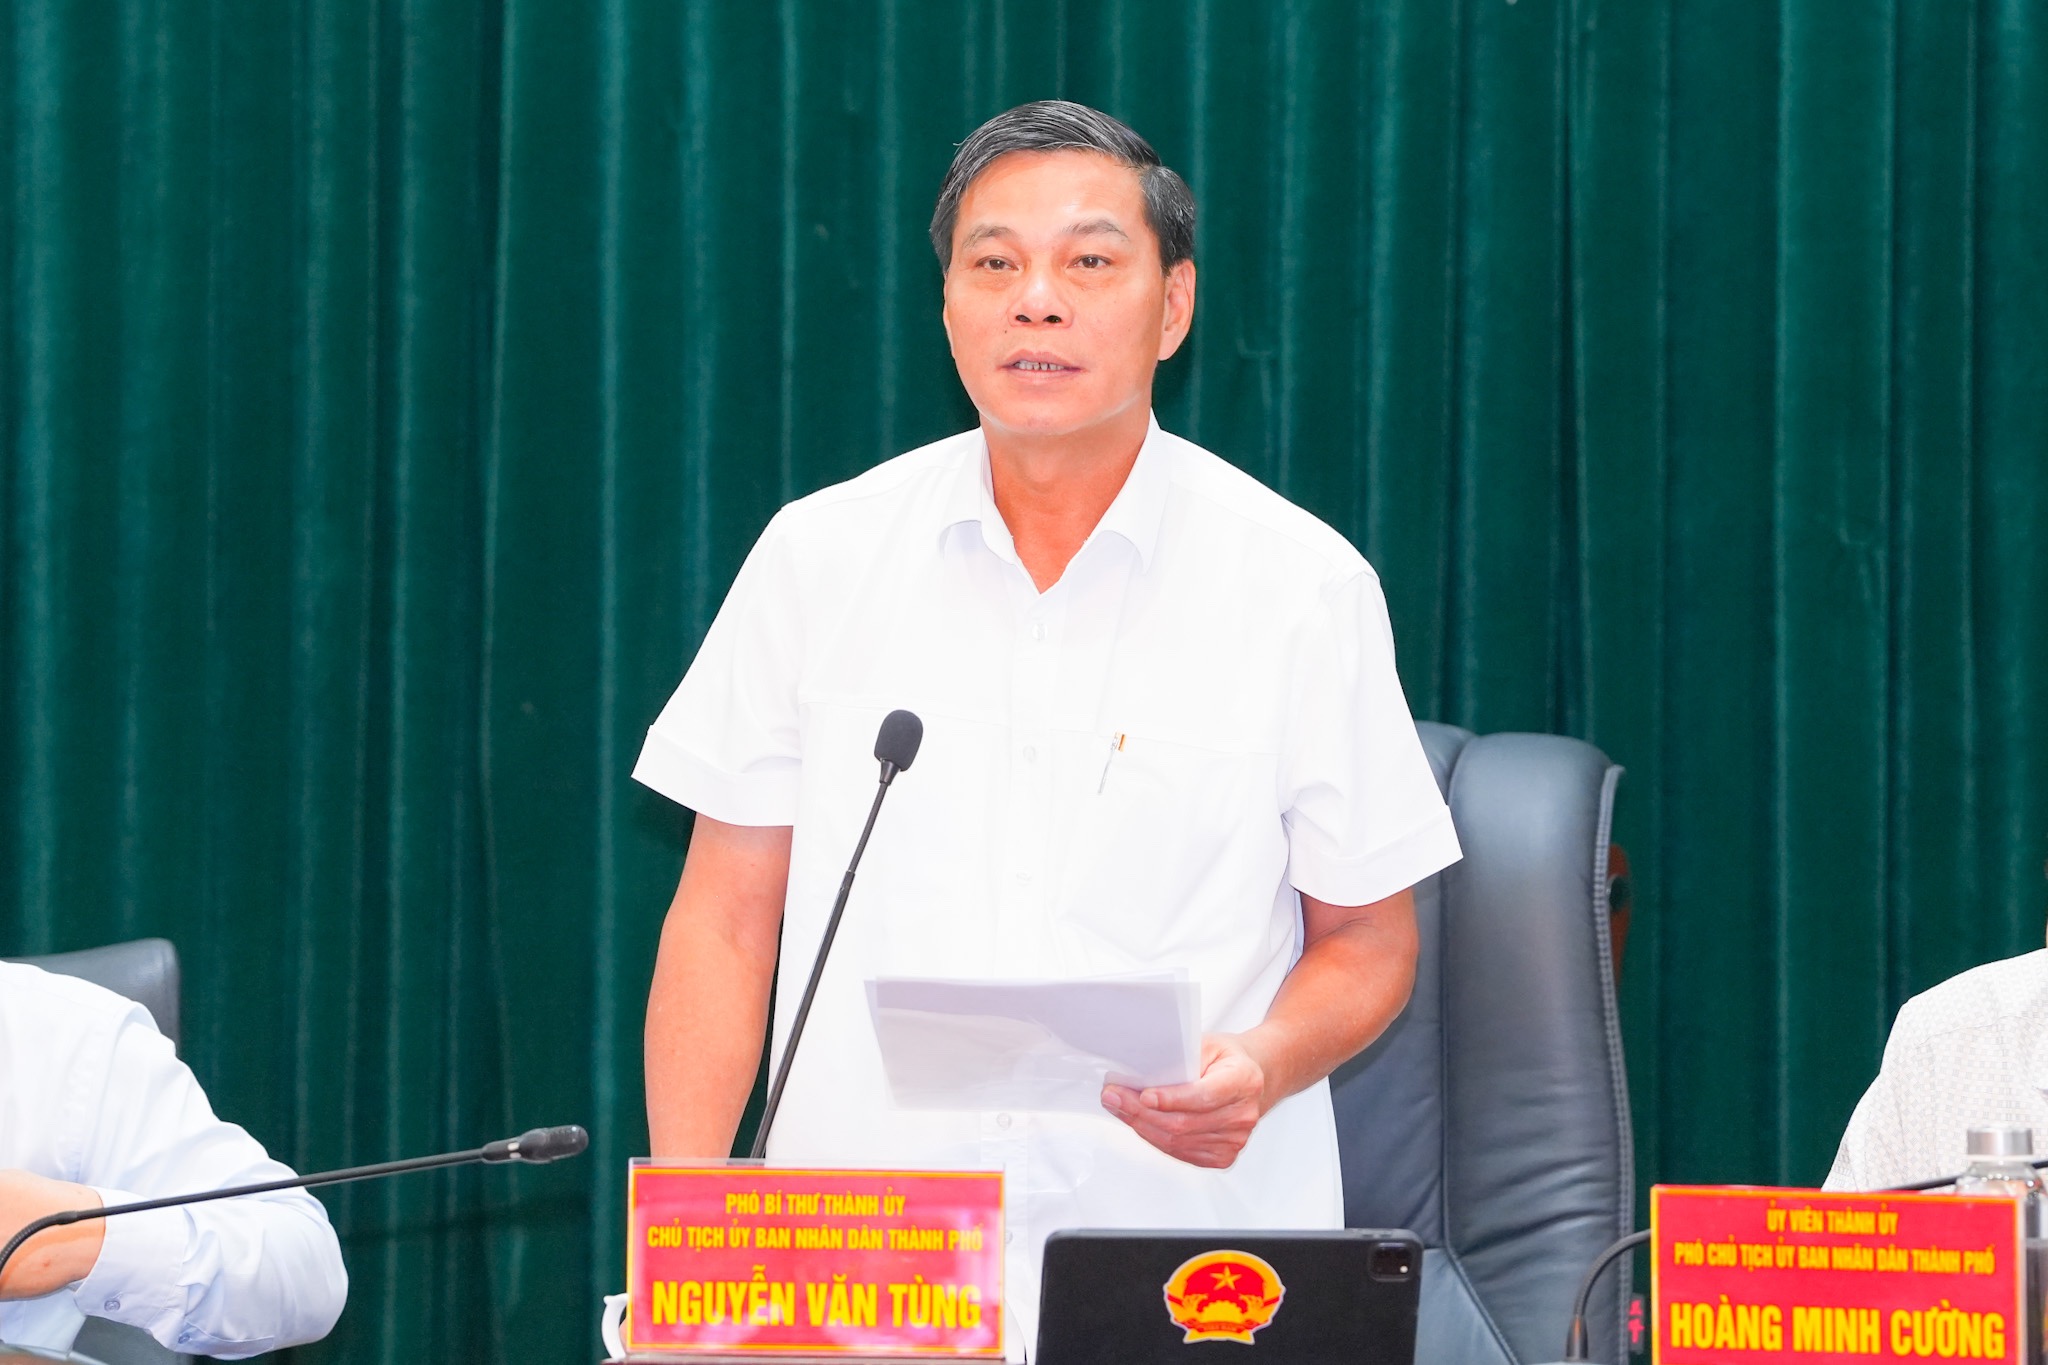 Ông Nguyễn Văn Tùng, Chủ tịch UBND TP. Hải Phòng nhấn mạnh ưu tiên thực hiện nhiệm vụ để huyện Thủy Nguyên trở thành thành phố trực thuộc thành phố, huyện An Dương đạt tiêu chí thành lập quận